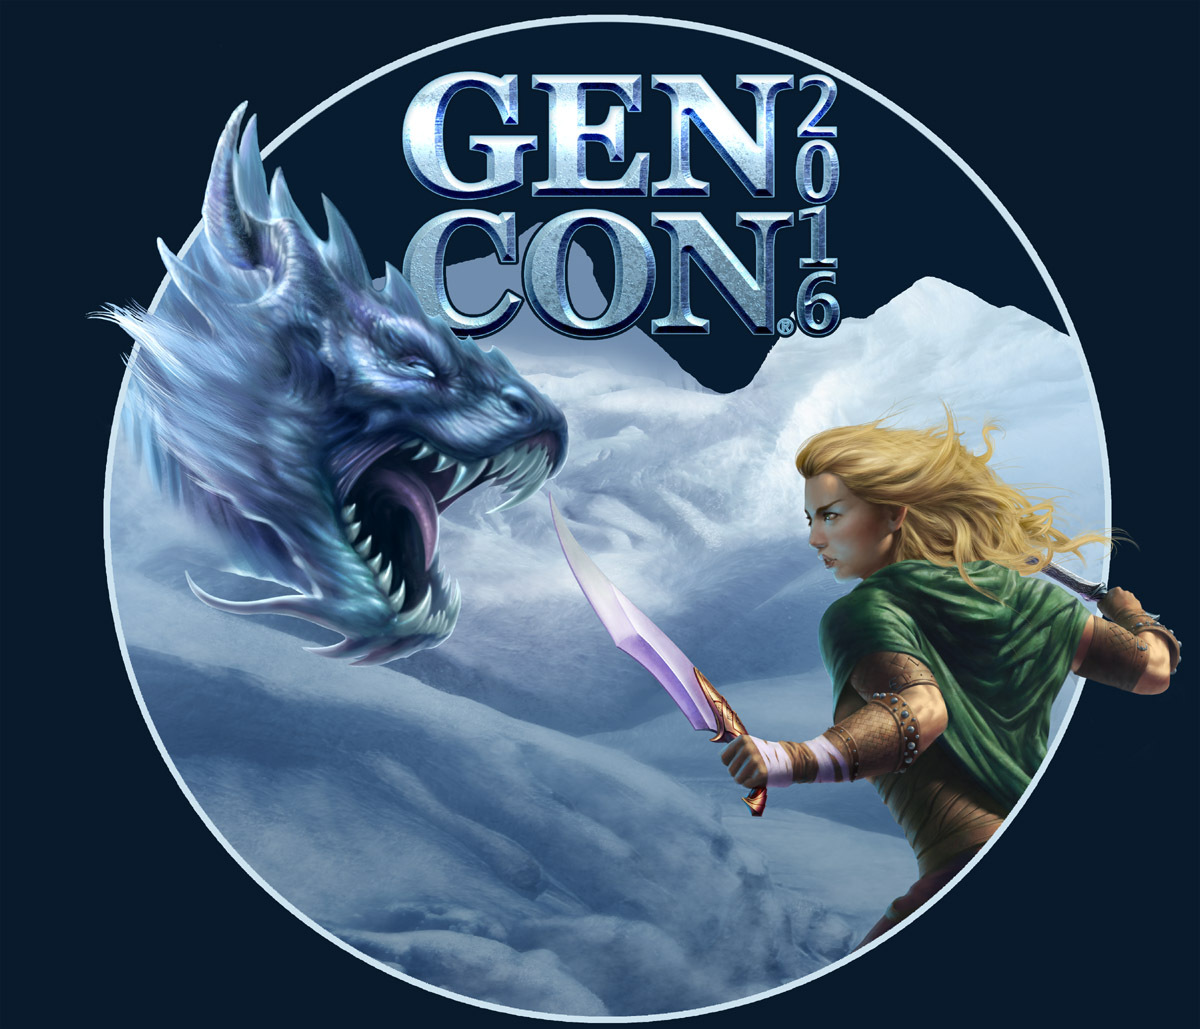 Gen Con 2016 "Legends" icon